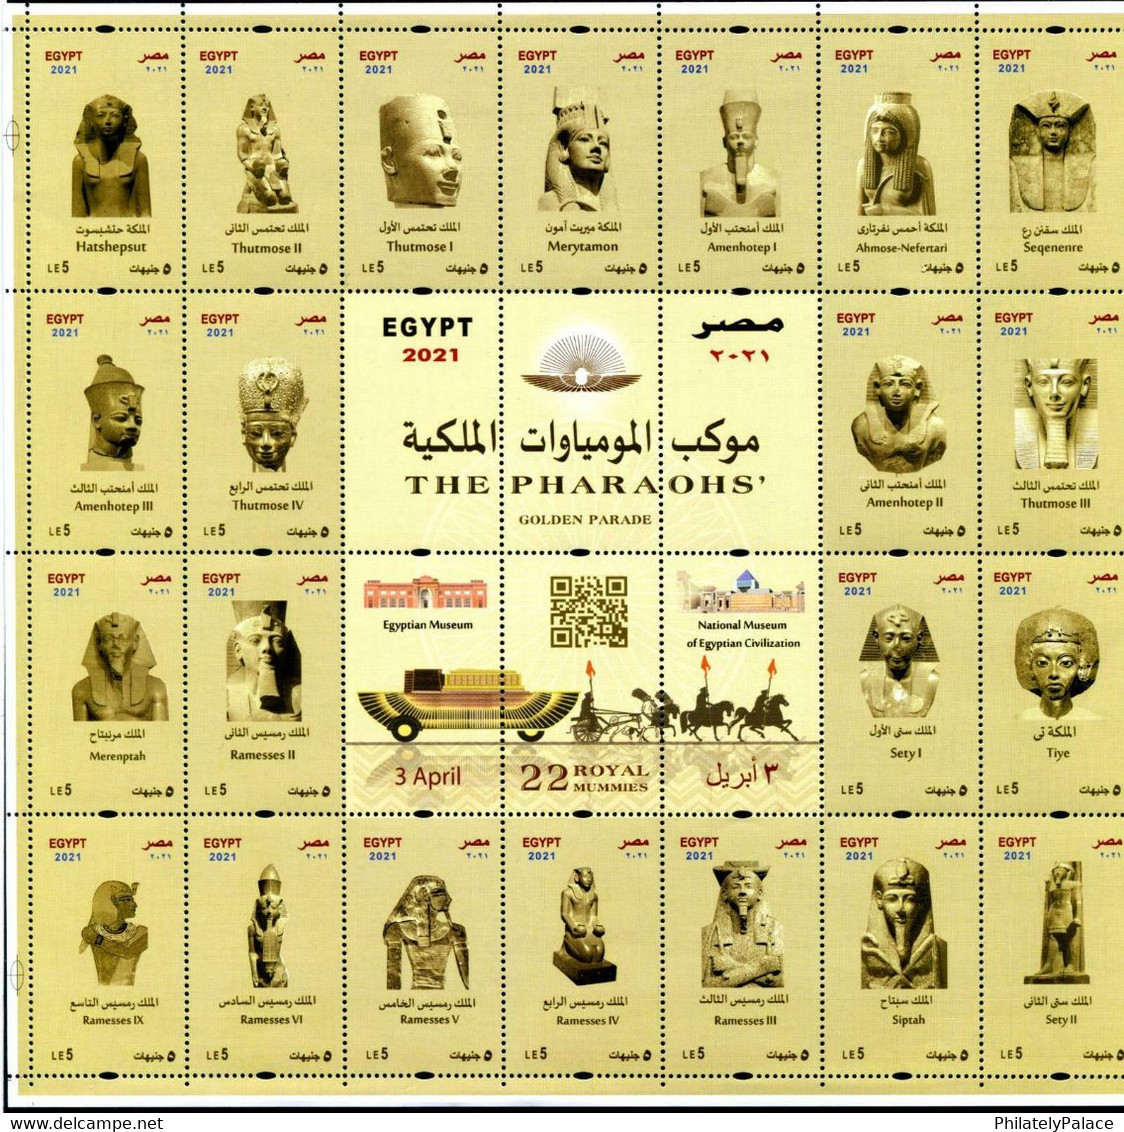 EGYPT 2021 THE PHARAOHS' GOLDEN PARADE 22 ROYAL MUMMIES KING & QUEENS SHEET MINT MNH (**) - Gebruikt